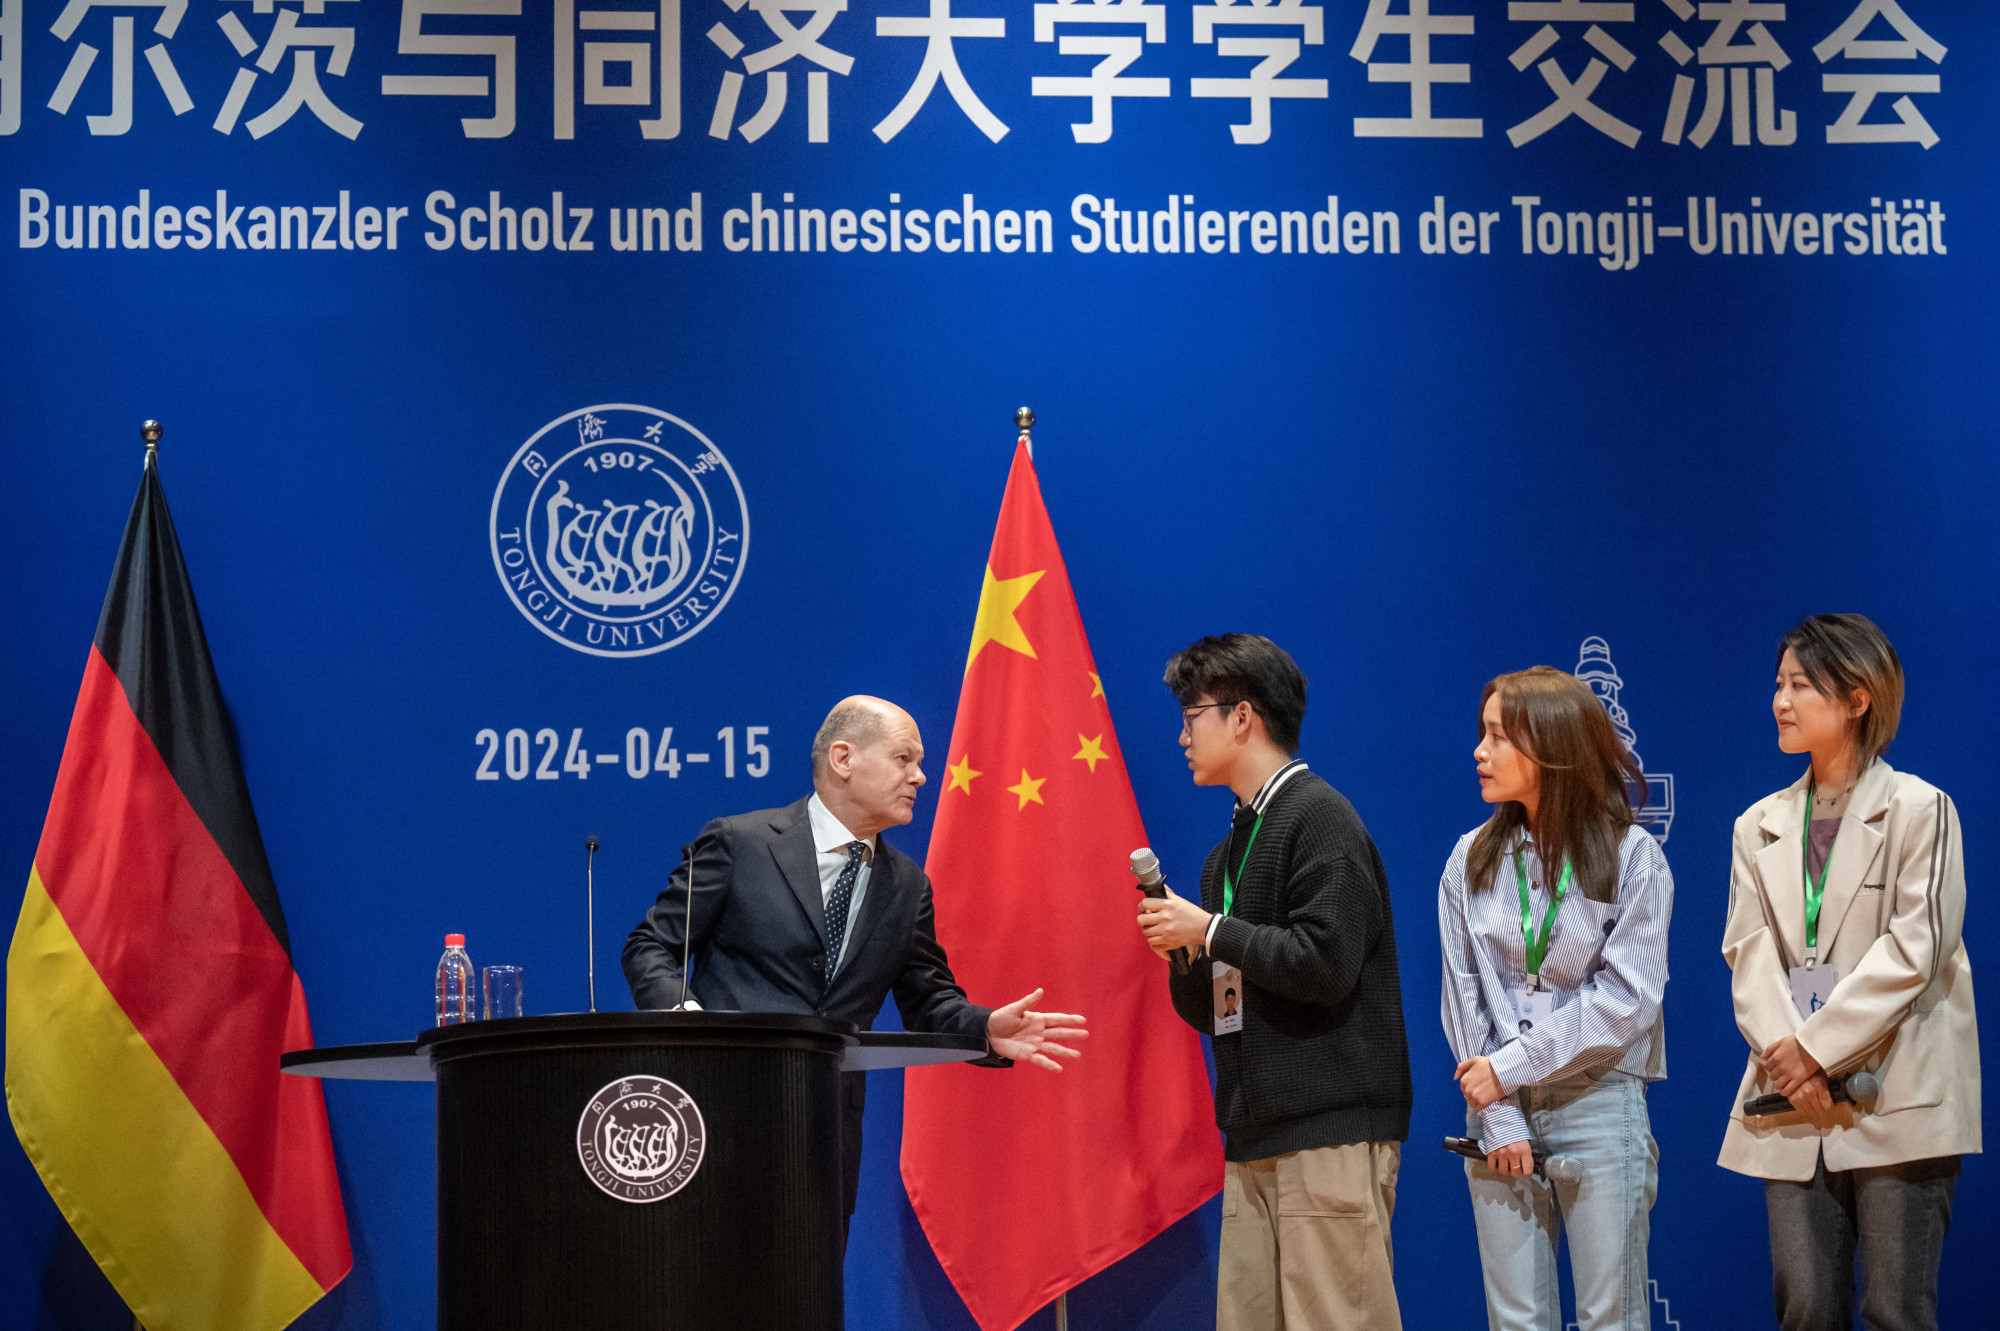 „Egyszerűen csak ne szívj” – válaszolta Scholz a német füvesek miatt aggódó kínai diáknak